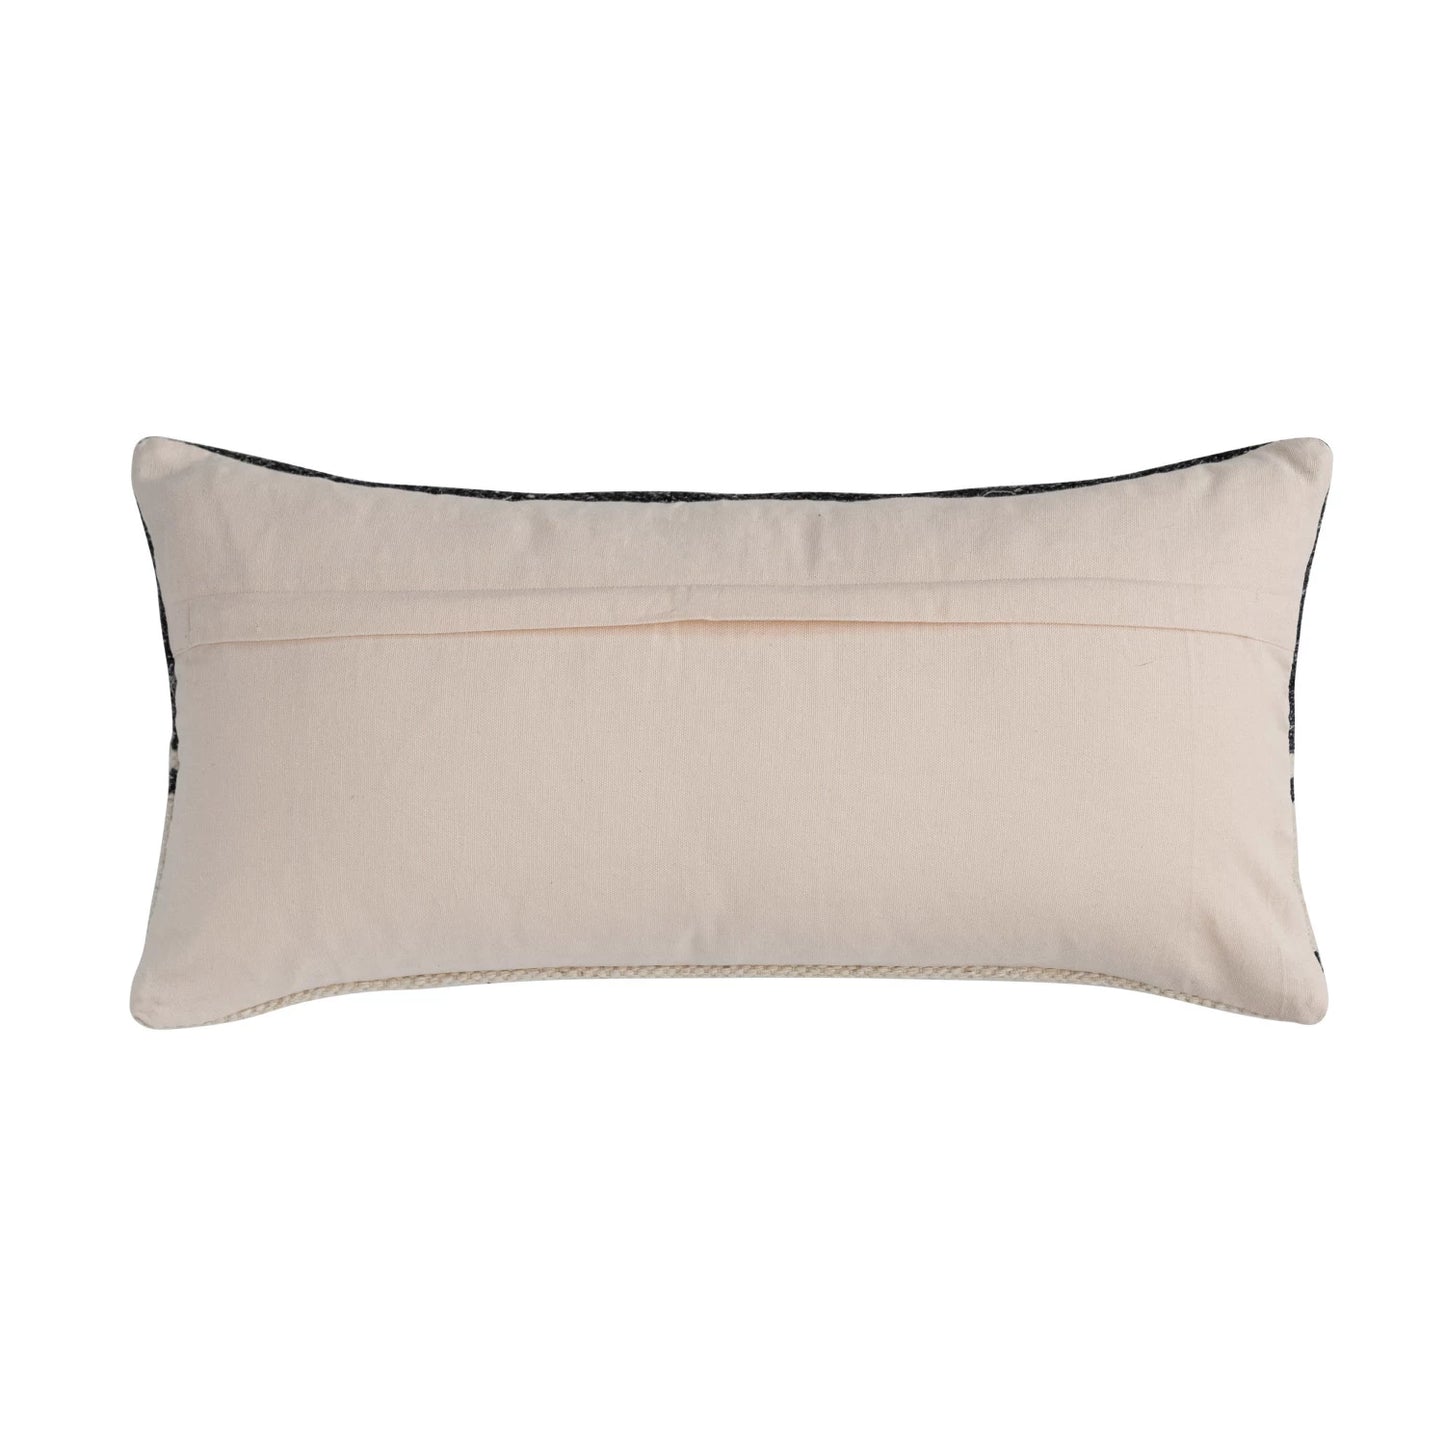 Woven Wool Blend Kilim Lumbar Pillow